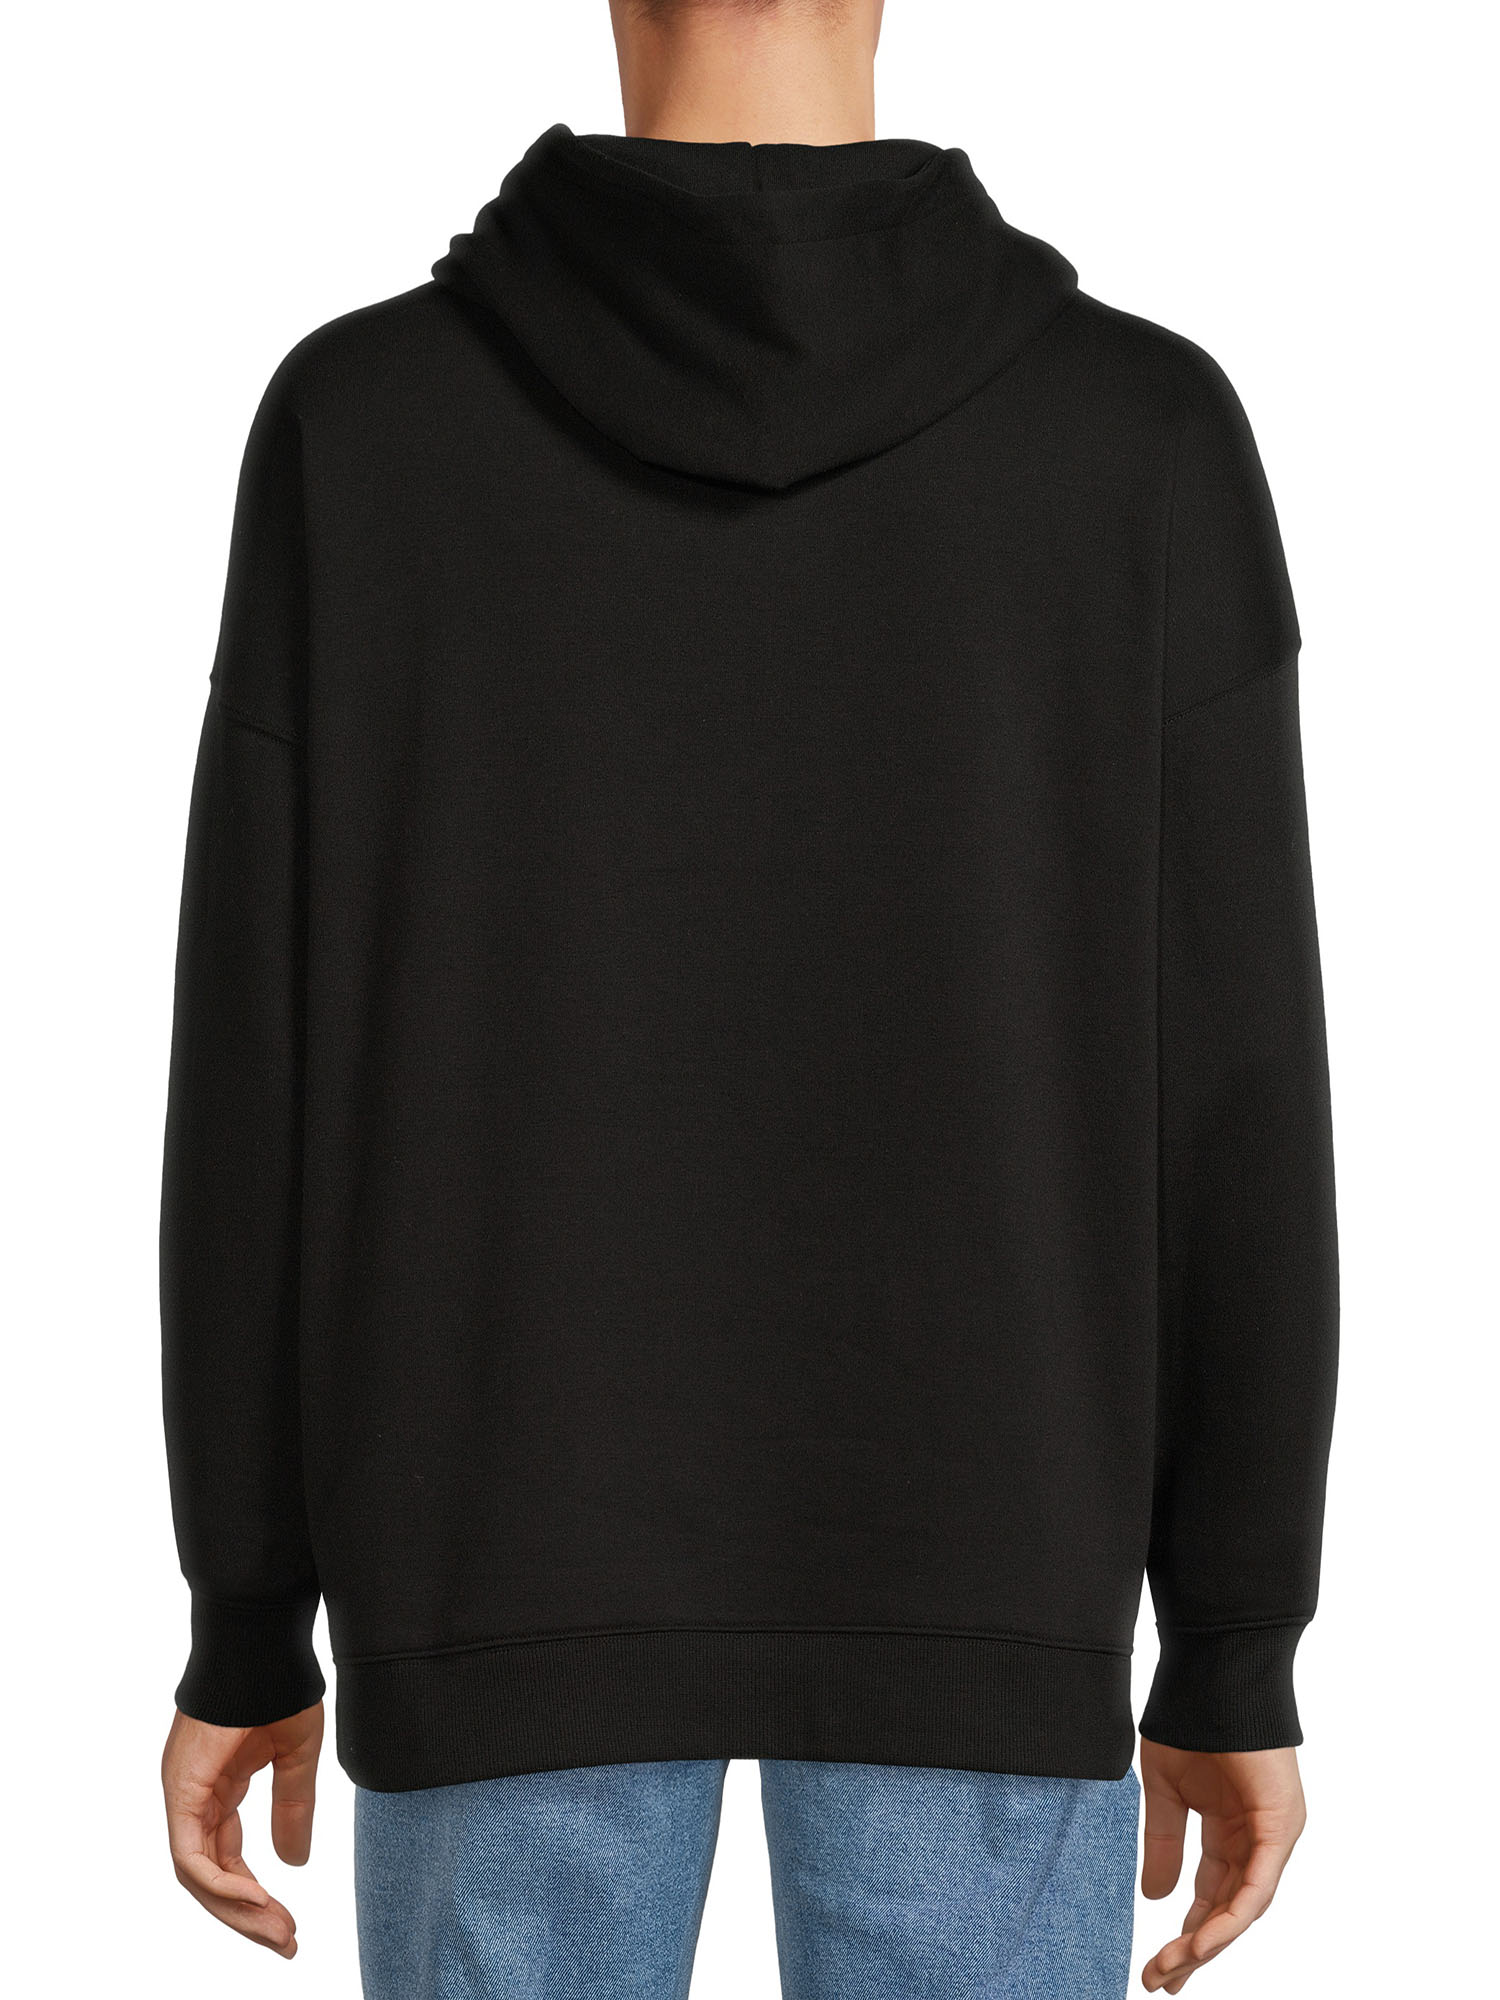 No Boundaries All Gender Fleece Hoodie Sweatshirt, Men's Sizes XS - 5XL - image 3 of 5